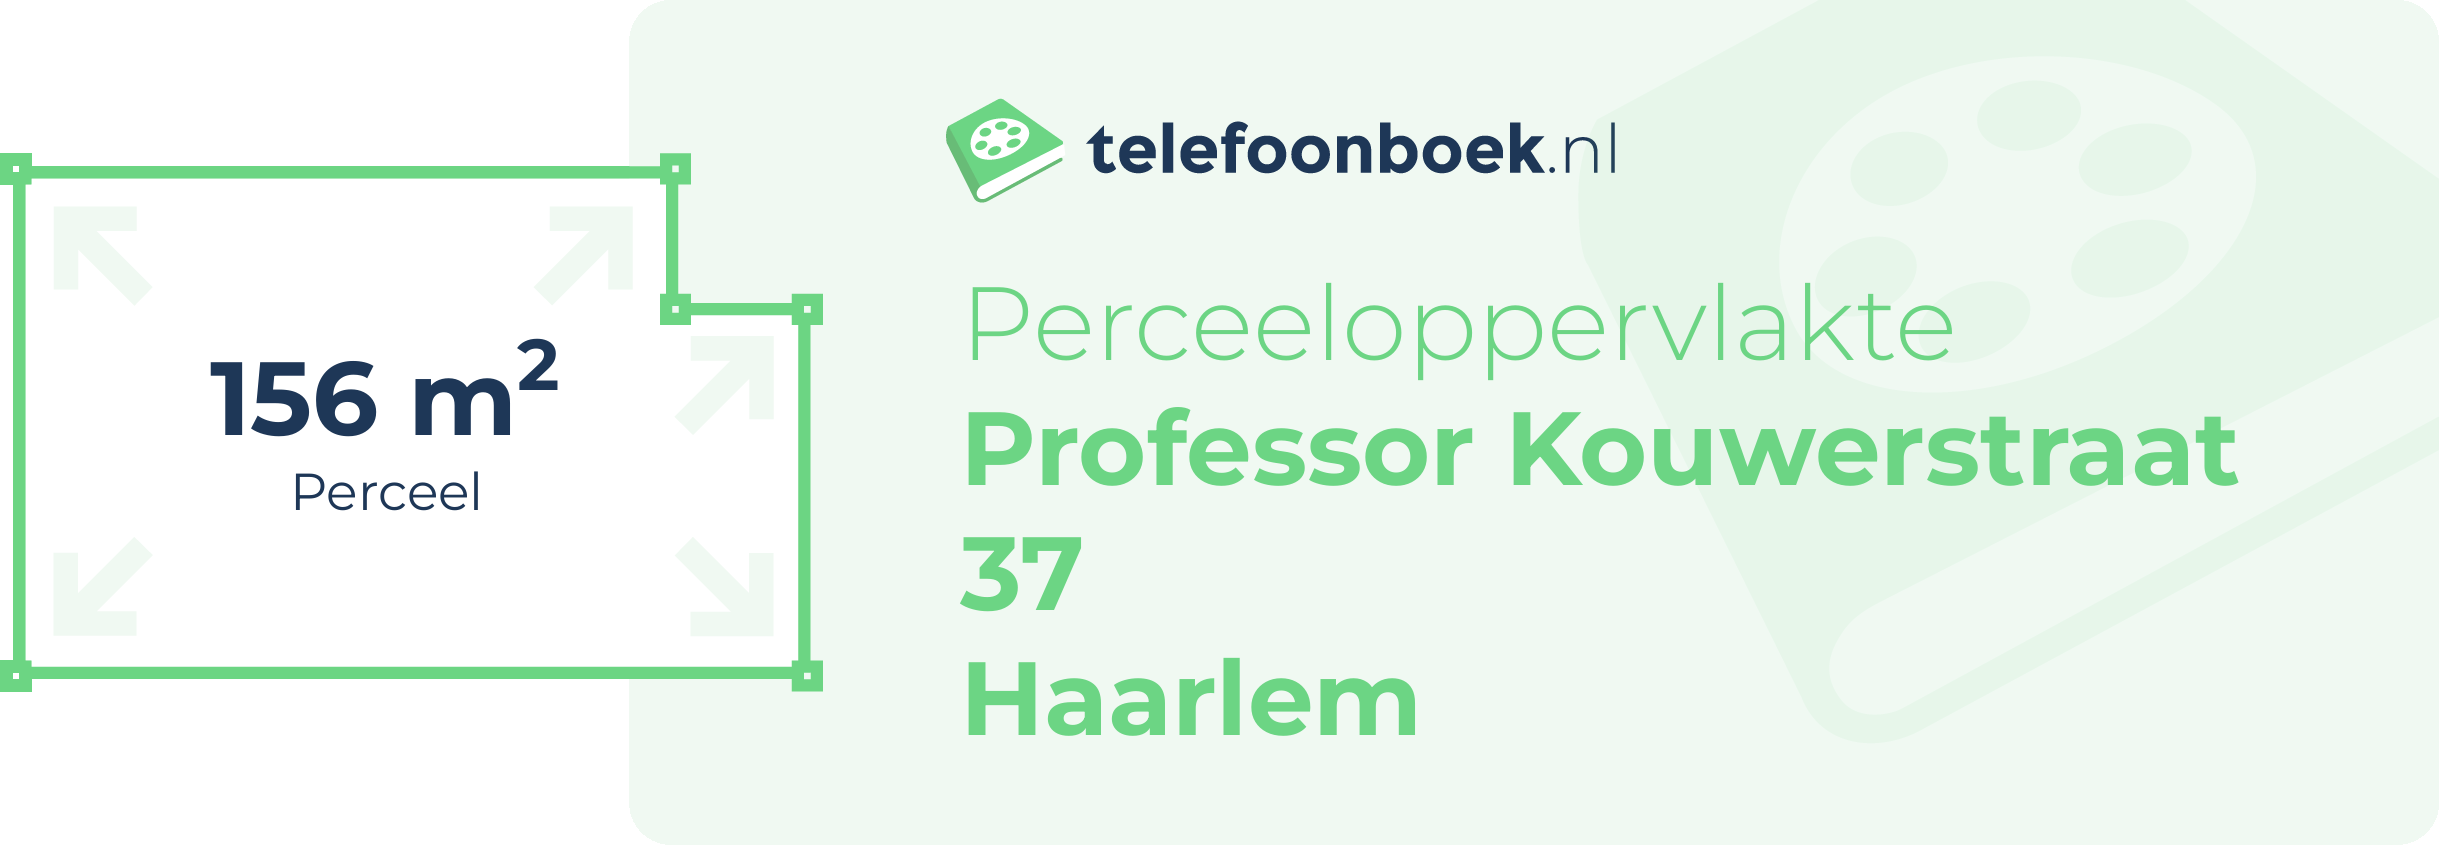 Perceeloppervlakte Professor Kouwerstraat 37 Haarlem